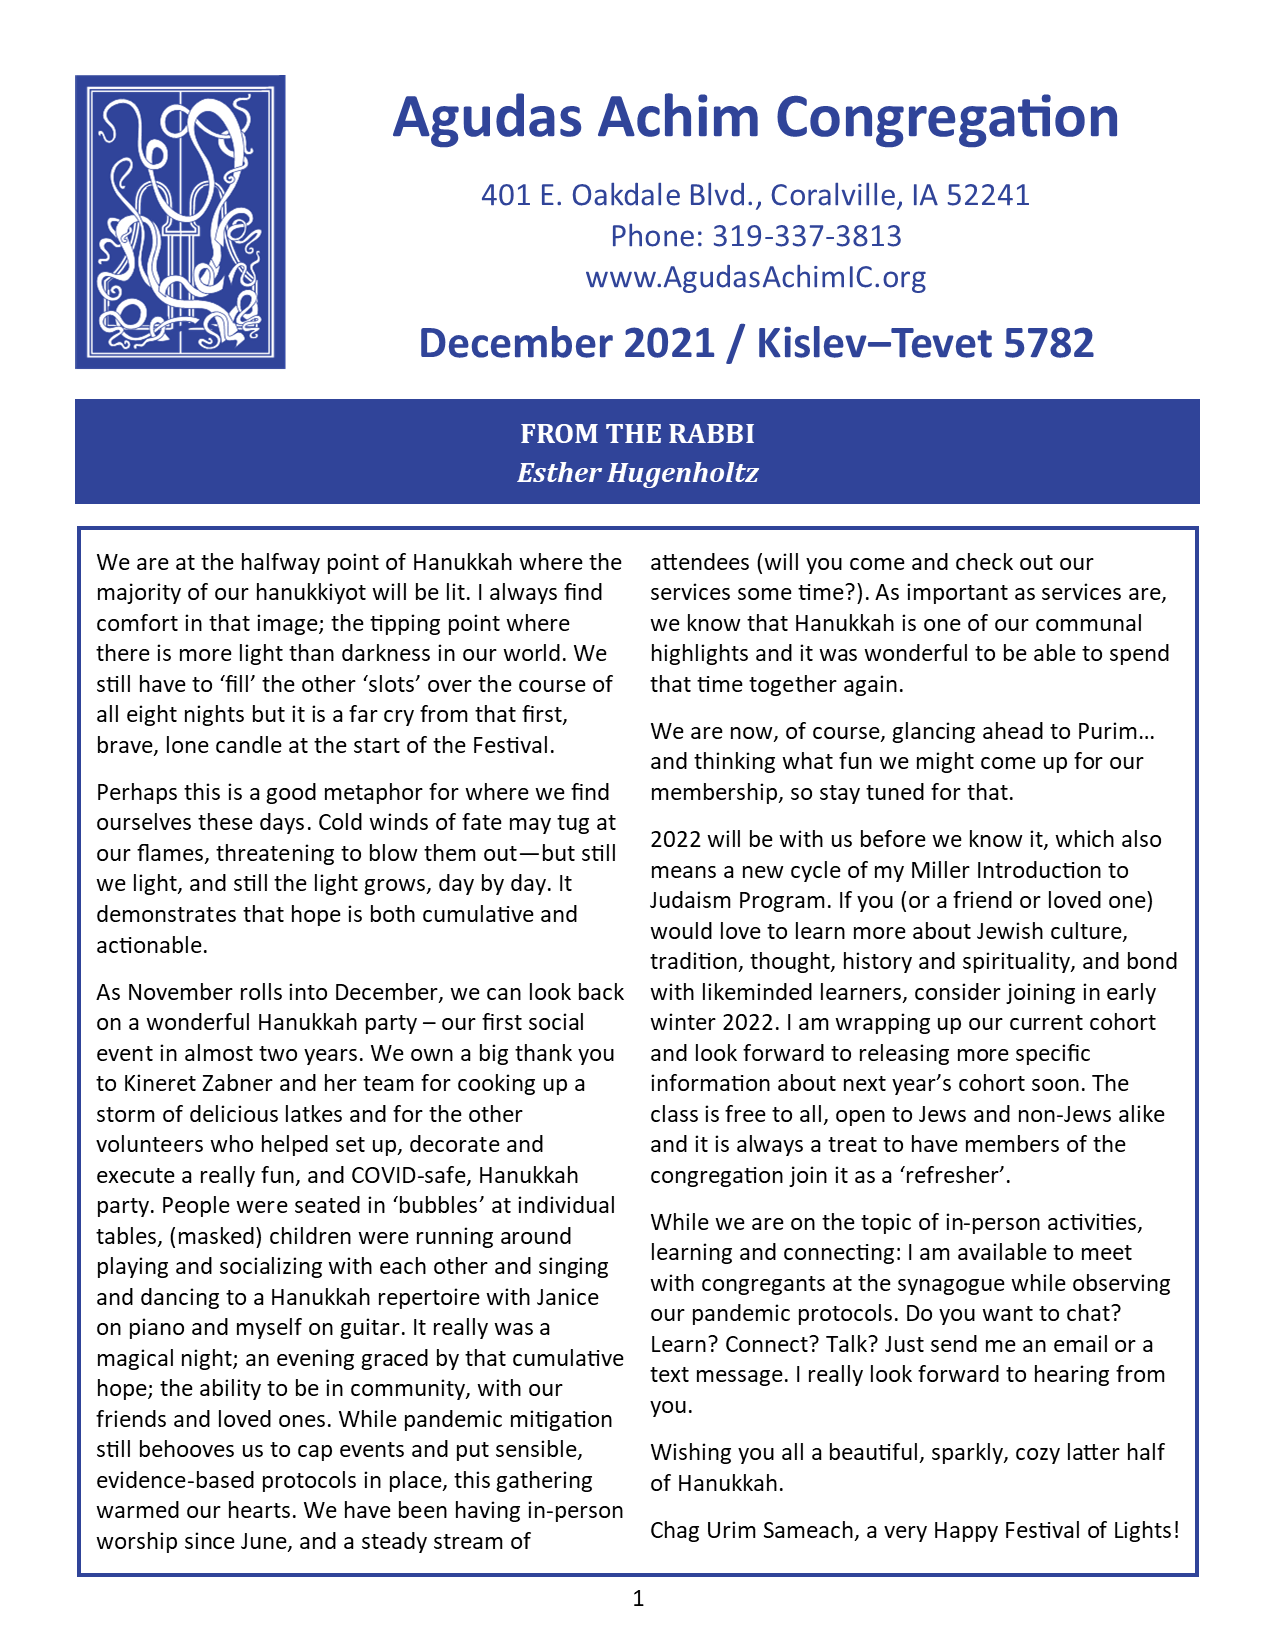 December  2021 Bulletin